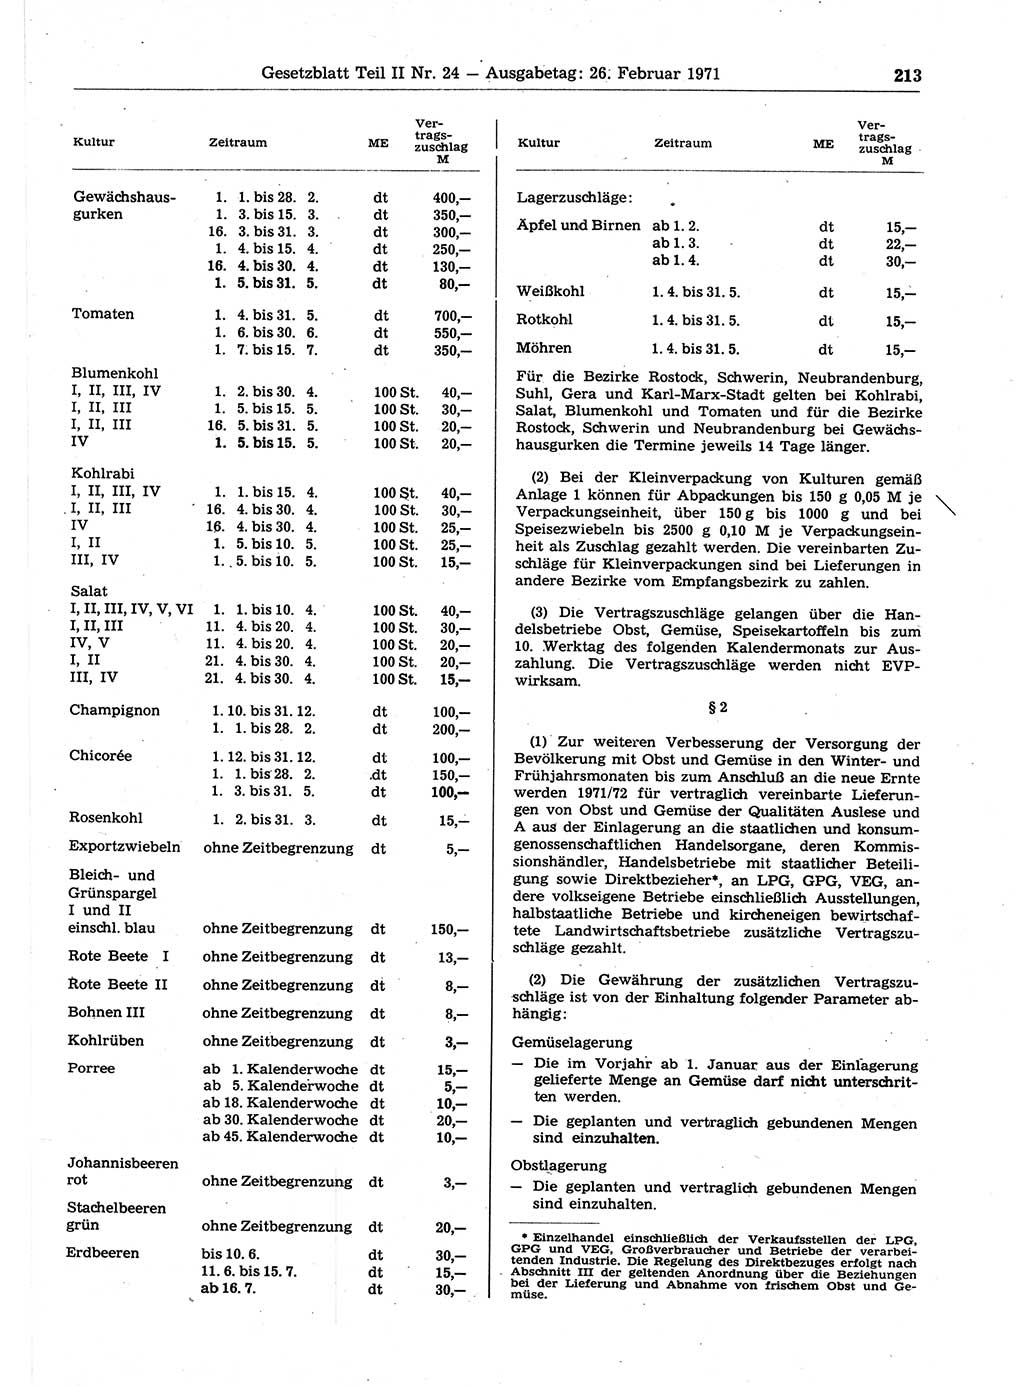 Gesetzblatt (GBl.) der Deutschen Demokratischen Republik (DDR) Teil ⅠⅠ 1971, Seite 213 (GBl. DDR ⅠⅠ 1971, S. 213)